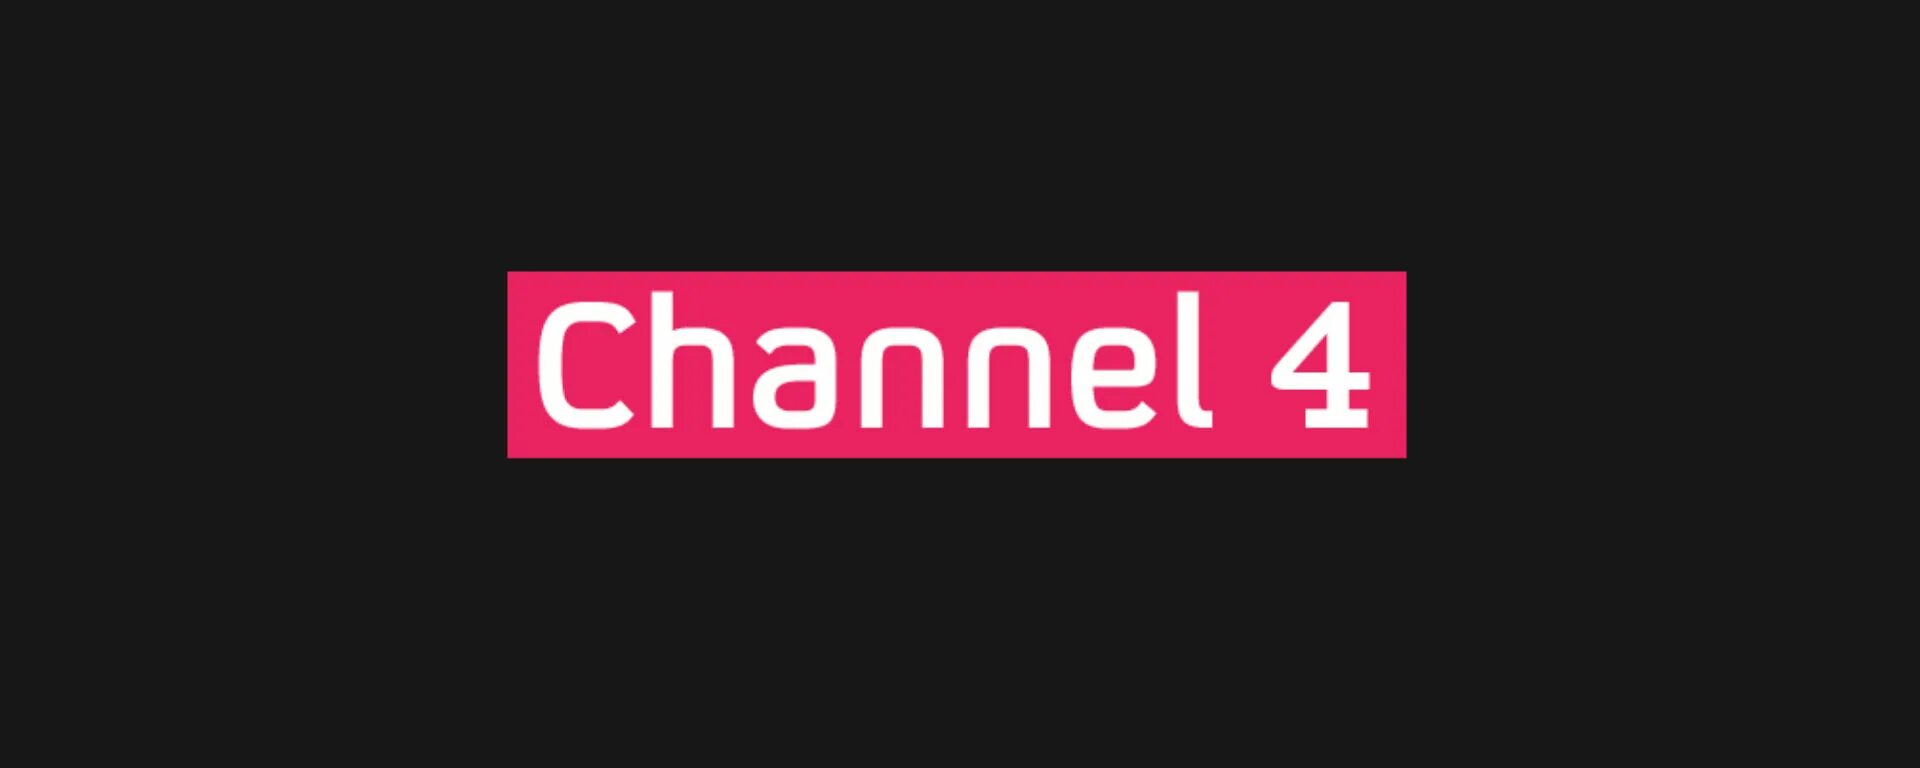 Canal 4. Channel 4. Zezik channel. Channel esqiz.